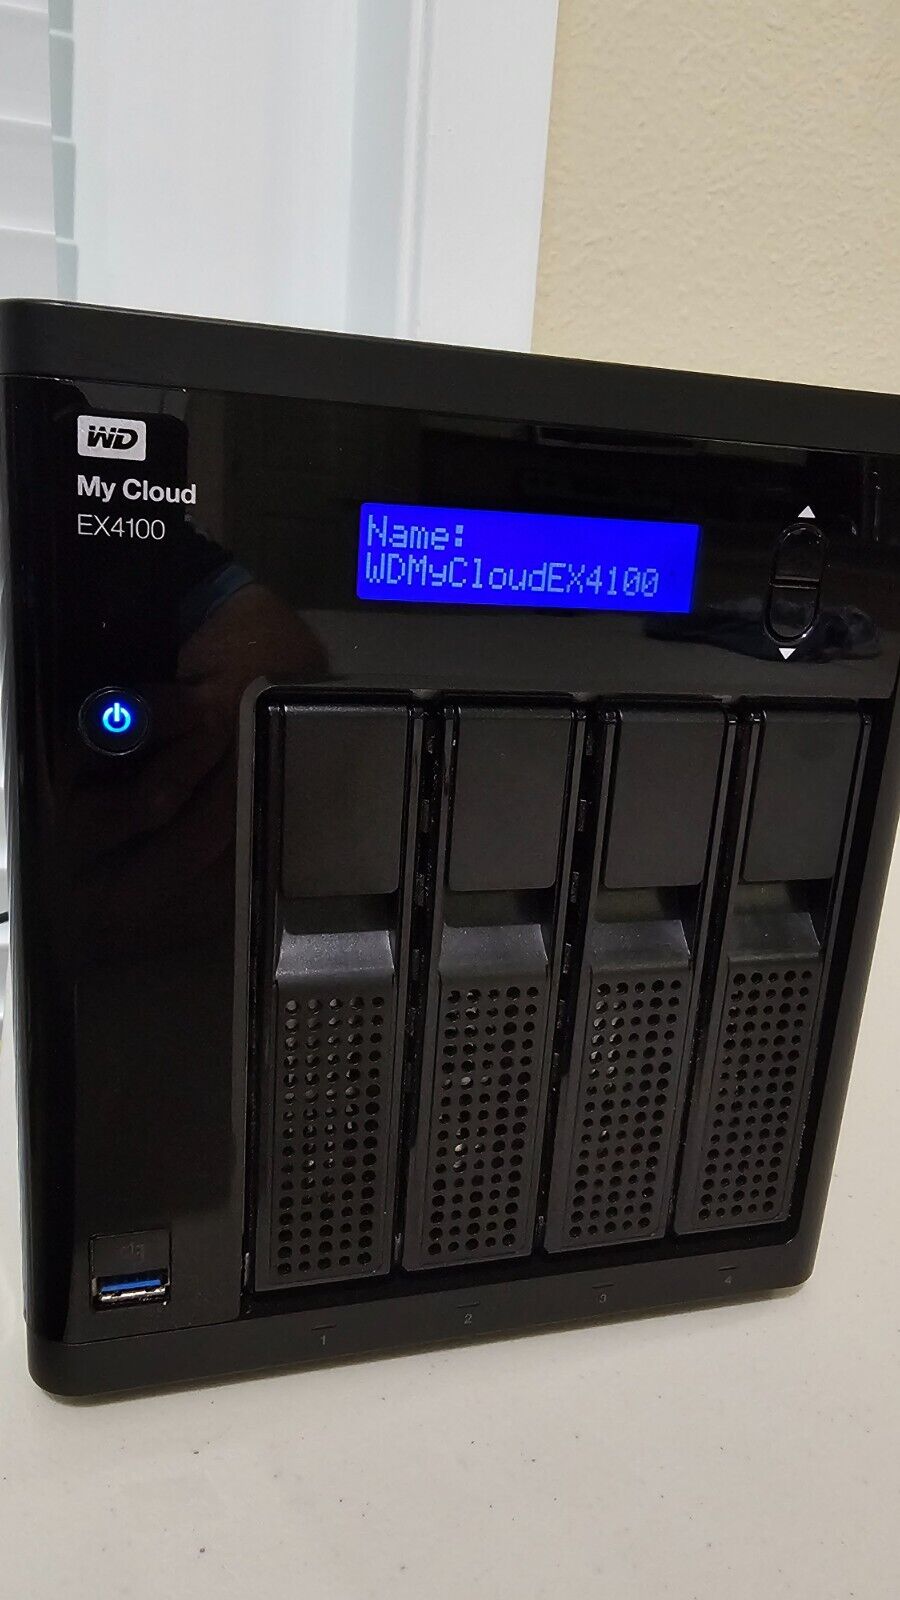 Western Digital My Cloud Expert Series EX4100 4-Bay Diskless Network Storage